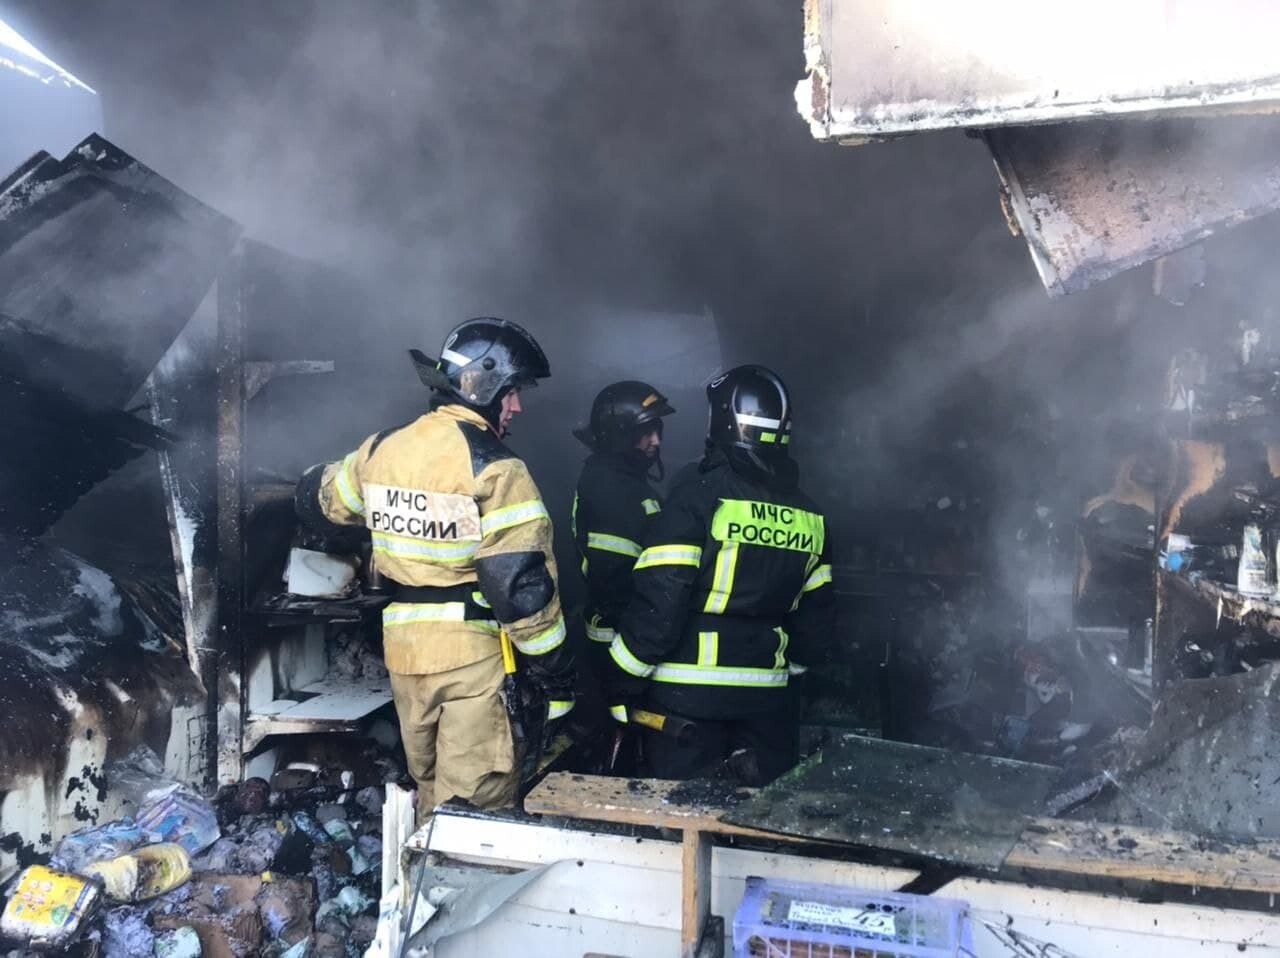 Пожар повышенной сложности потушили на рынке во Владивостоке - МЧС